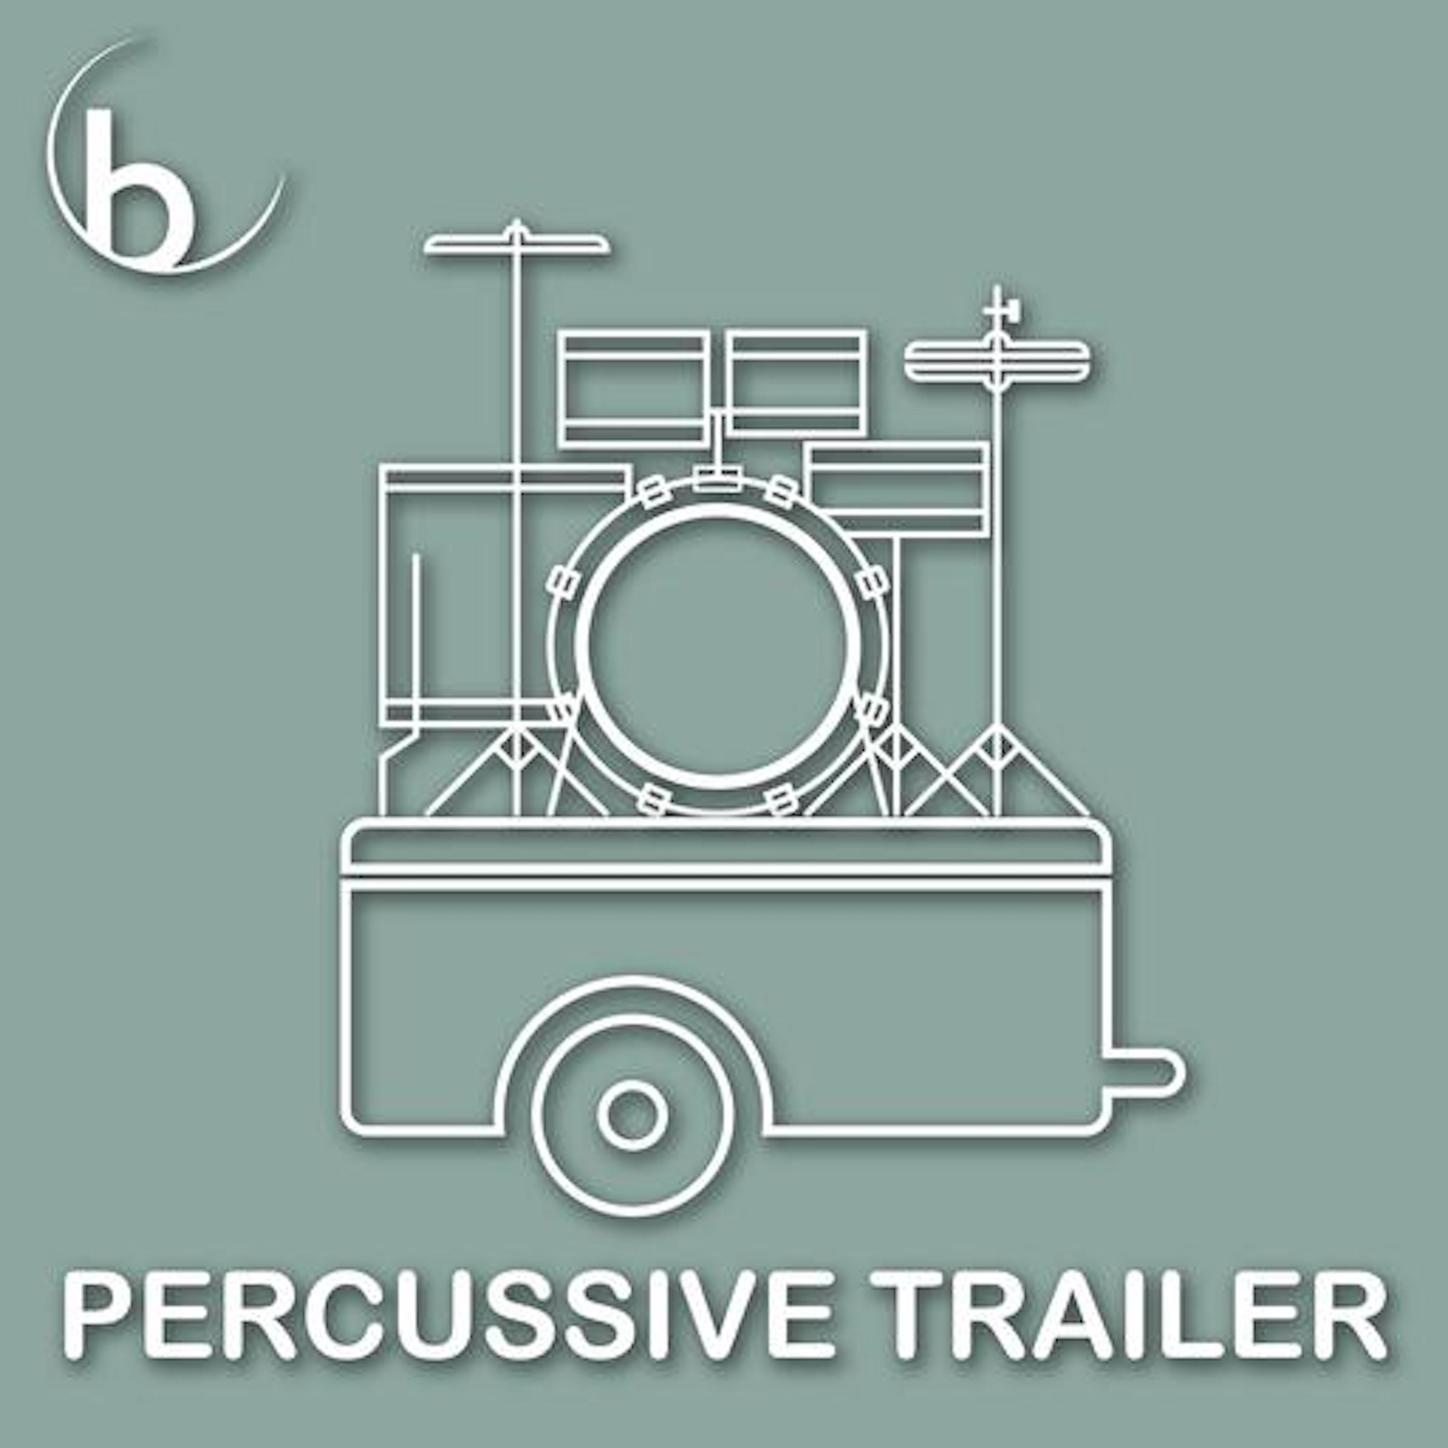 Percussive Trailer